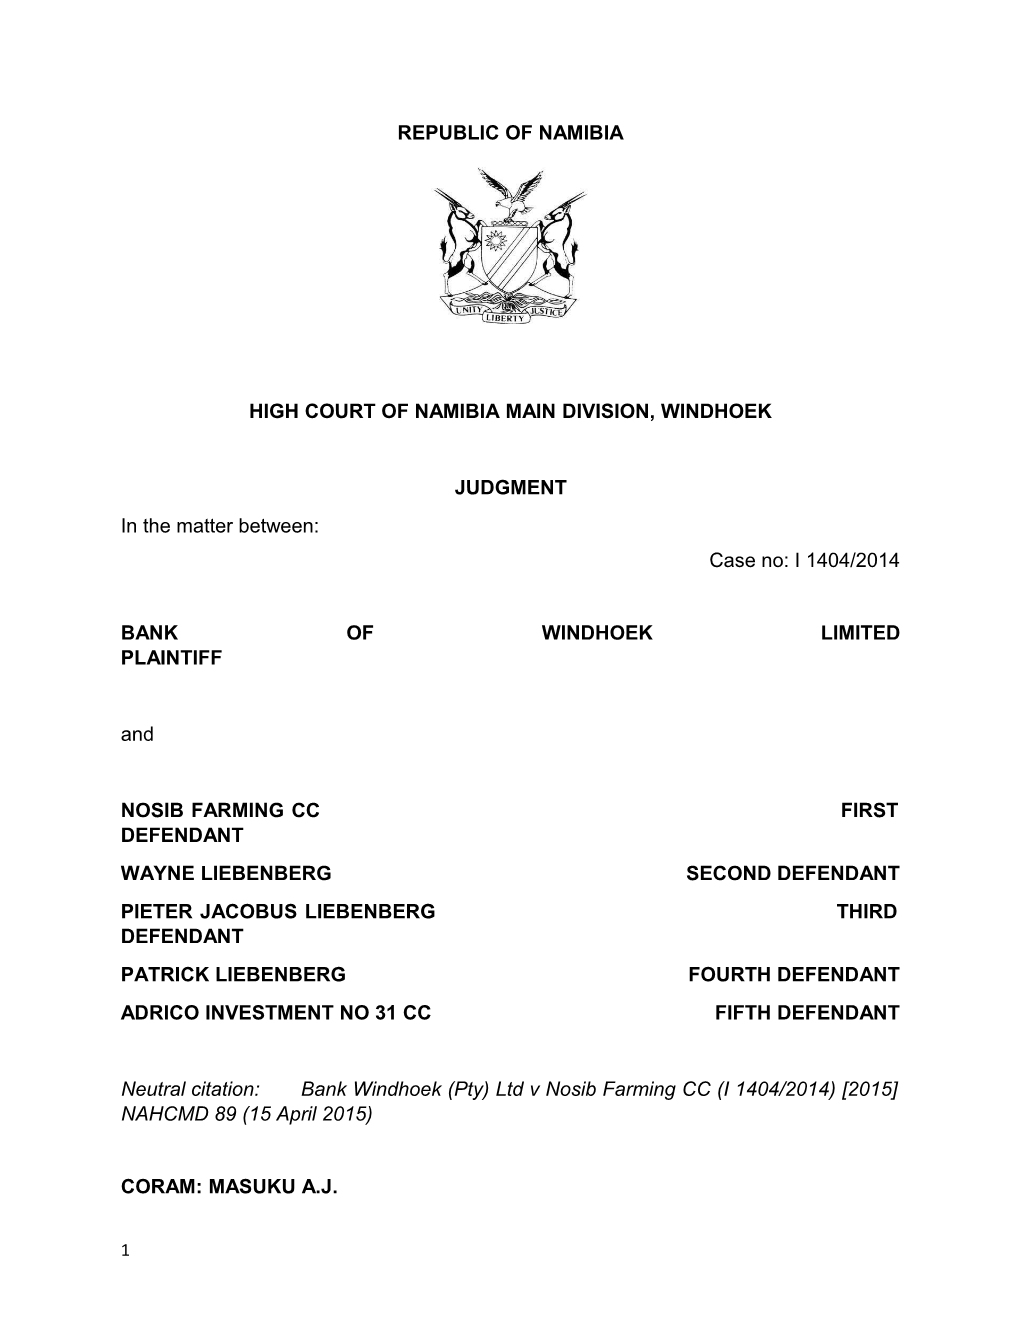 Bank Windhoek (Pty) Ltd V Nosib Farming CC (I 1404-2014) 2015 NAHCMD 89 (15 April 2015)